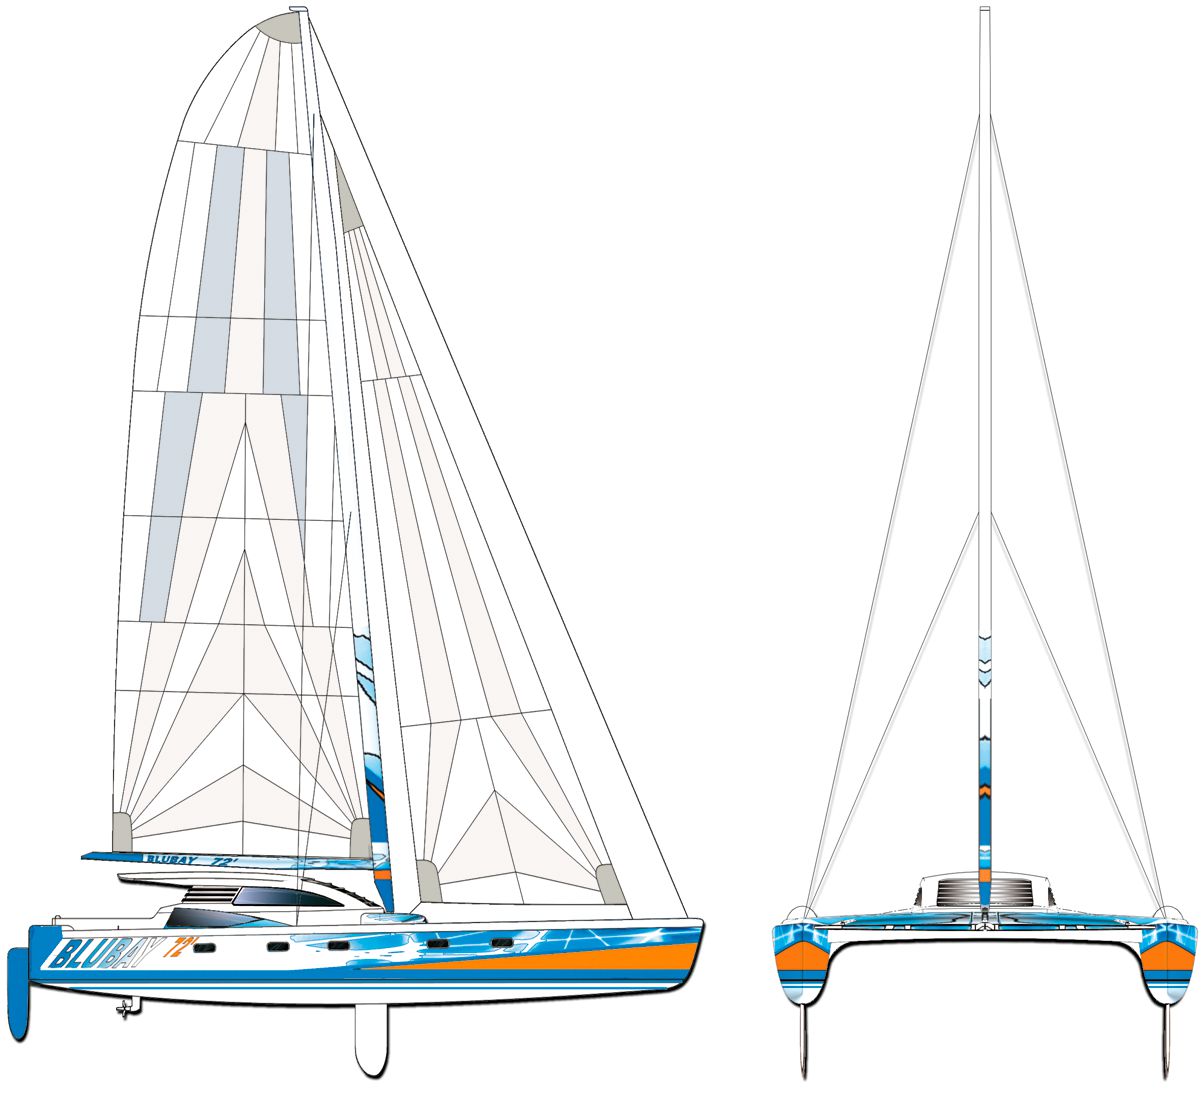 Blubay 72' Galiléo cata voile high perf par Luc Simon, architecte et designer naval, constructeur de bateau.